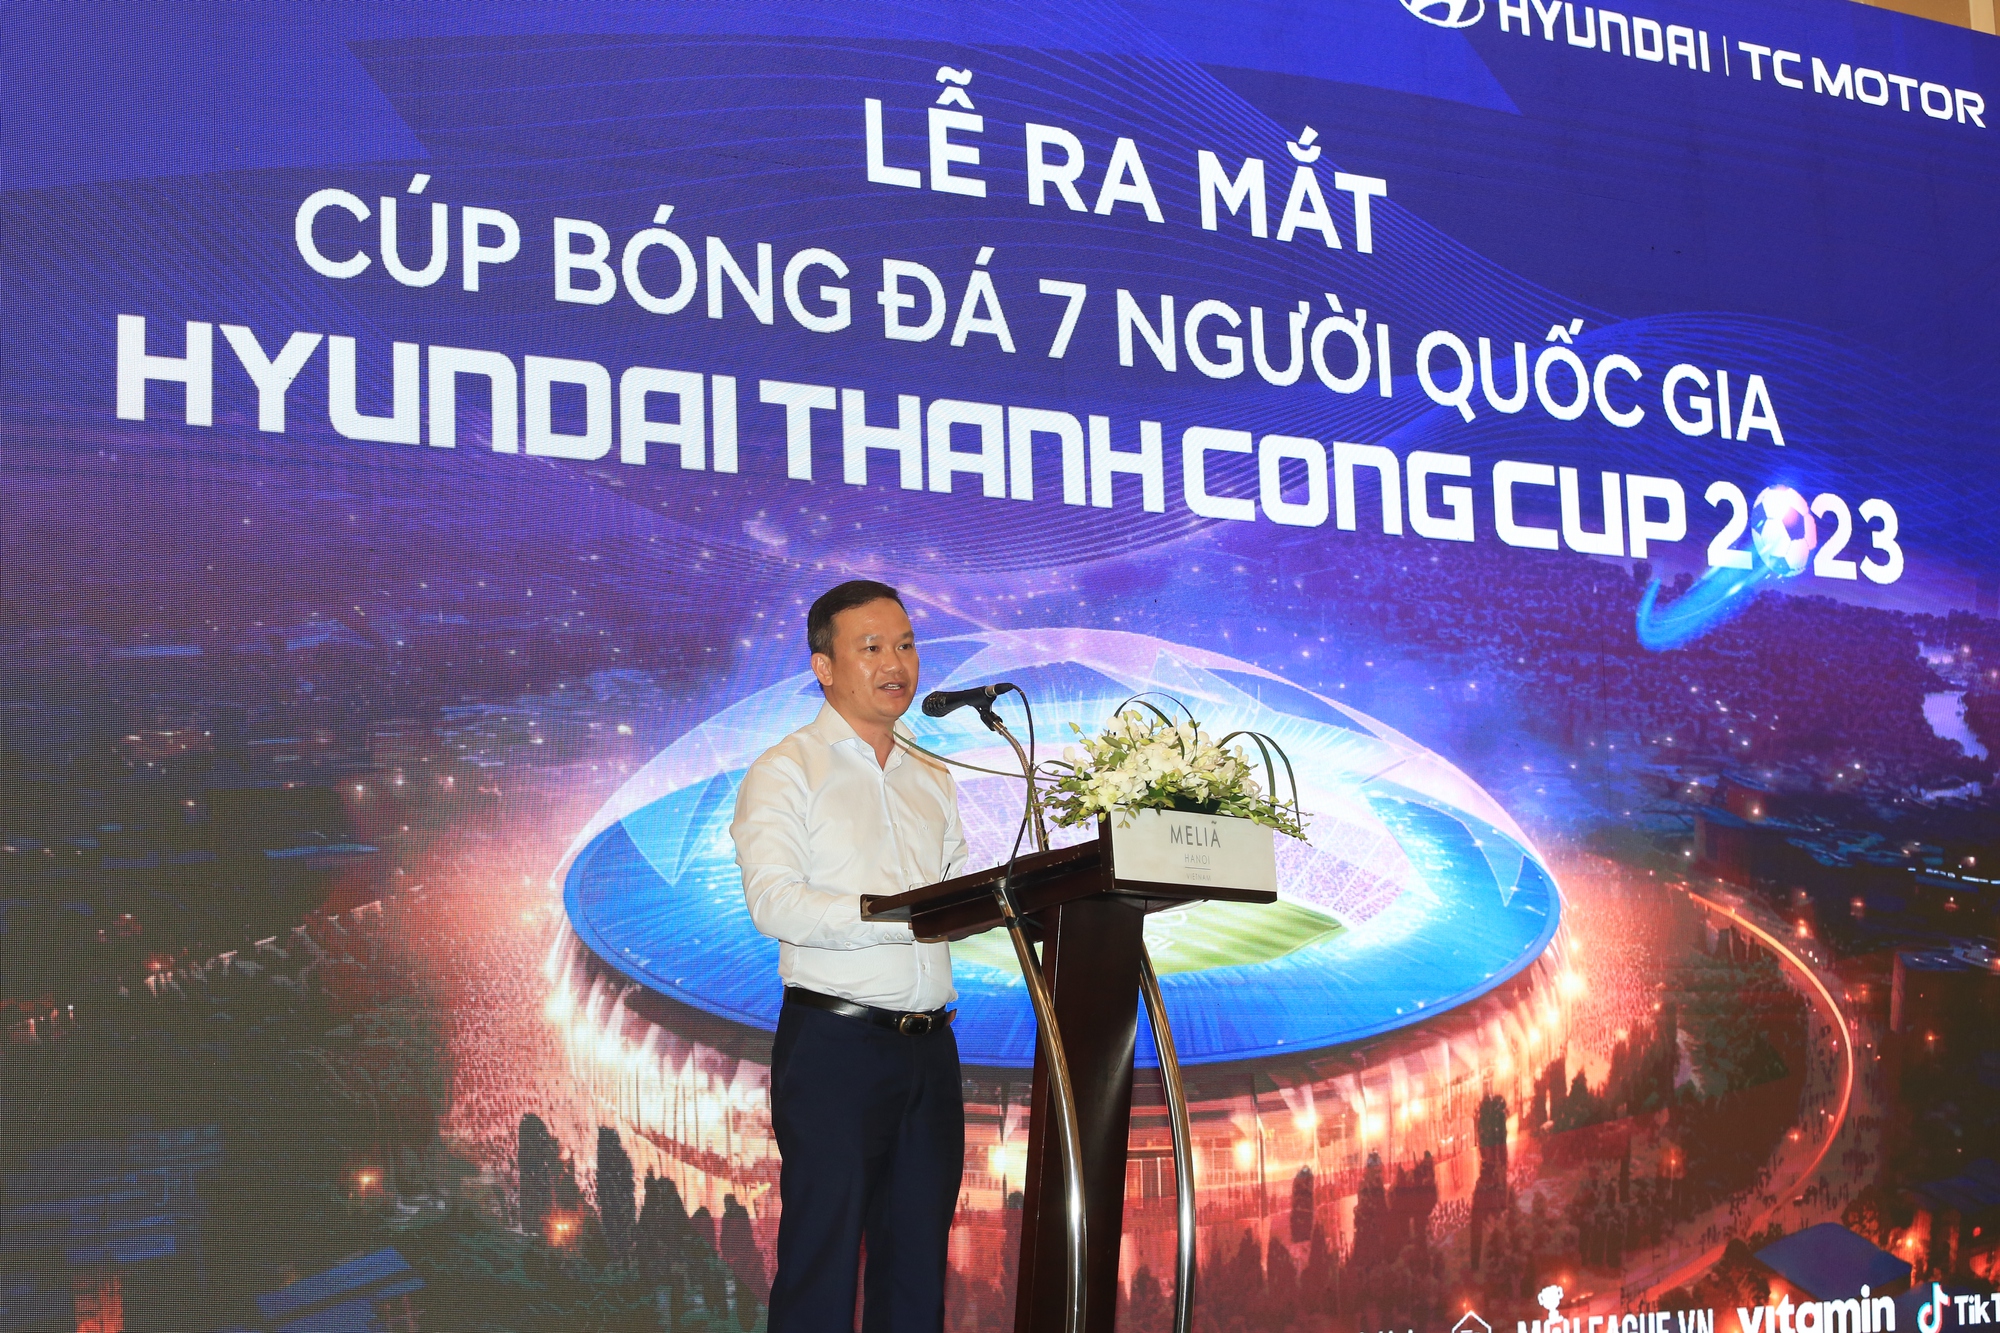  40 đội bóng &quot;tranh hùng&quot; tại Cúp bóng đá 7 người quốc gia - Hyundai Thanh Cong Cup 2023 - Ảnh 1.